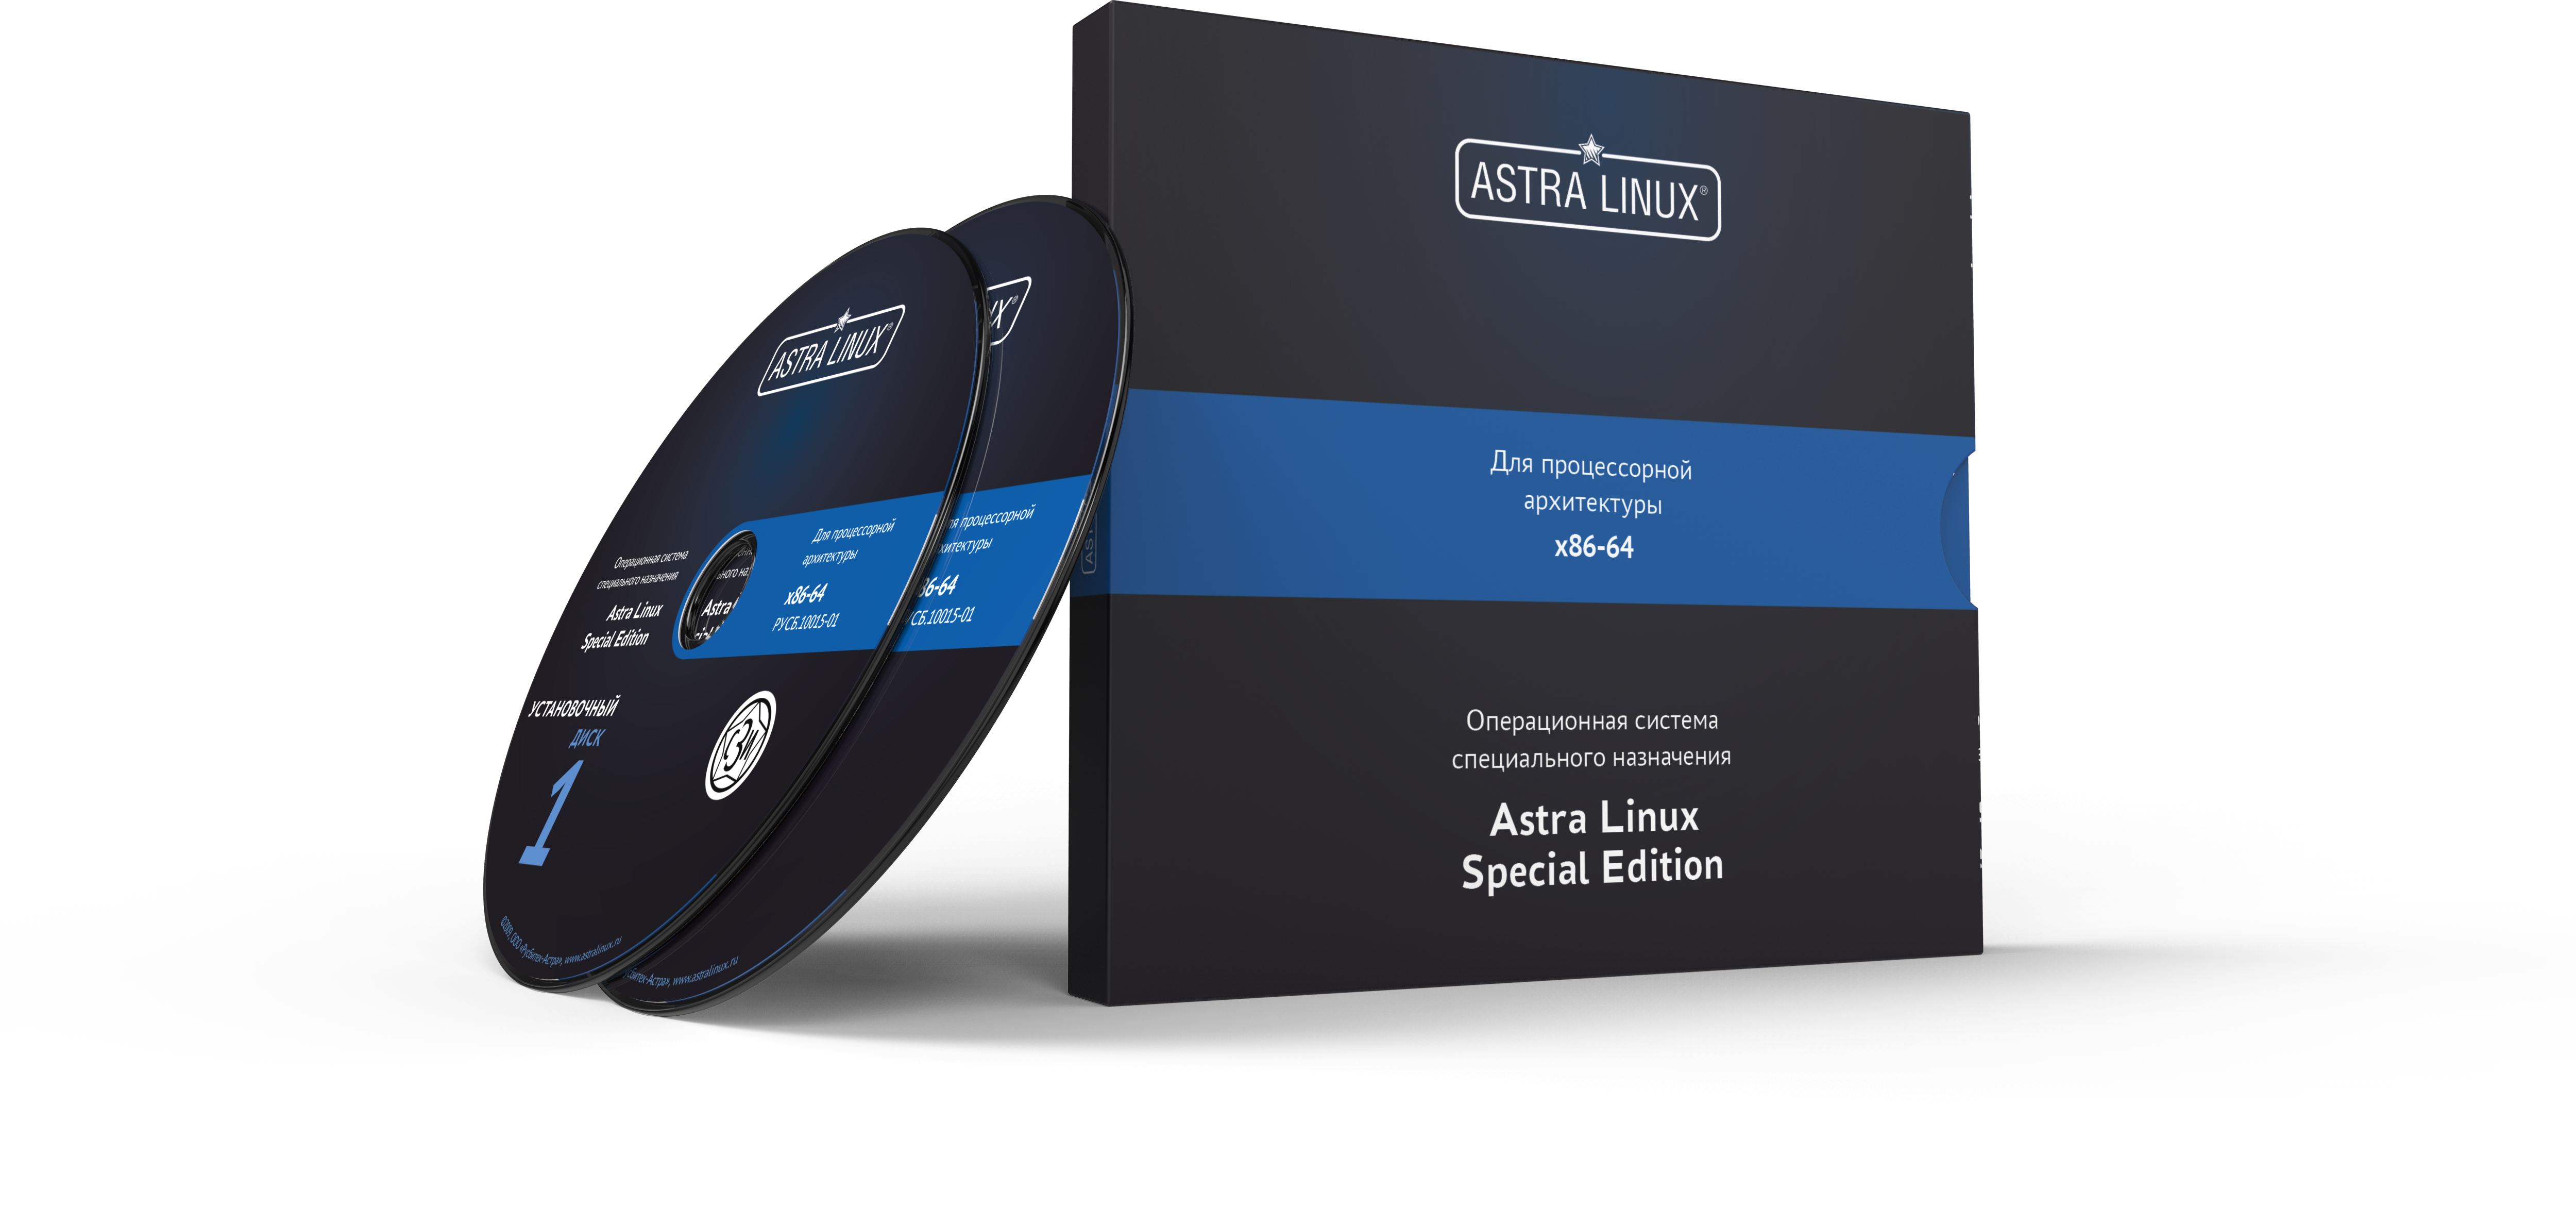 Astra Linux Special Edition 1.7 - Смоленск, "Максимальный", электронный, без огр. срока, ТП "Стандарт" на 12 мес.